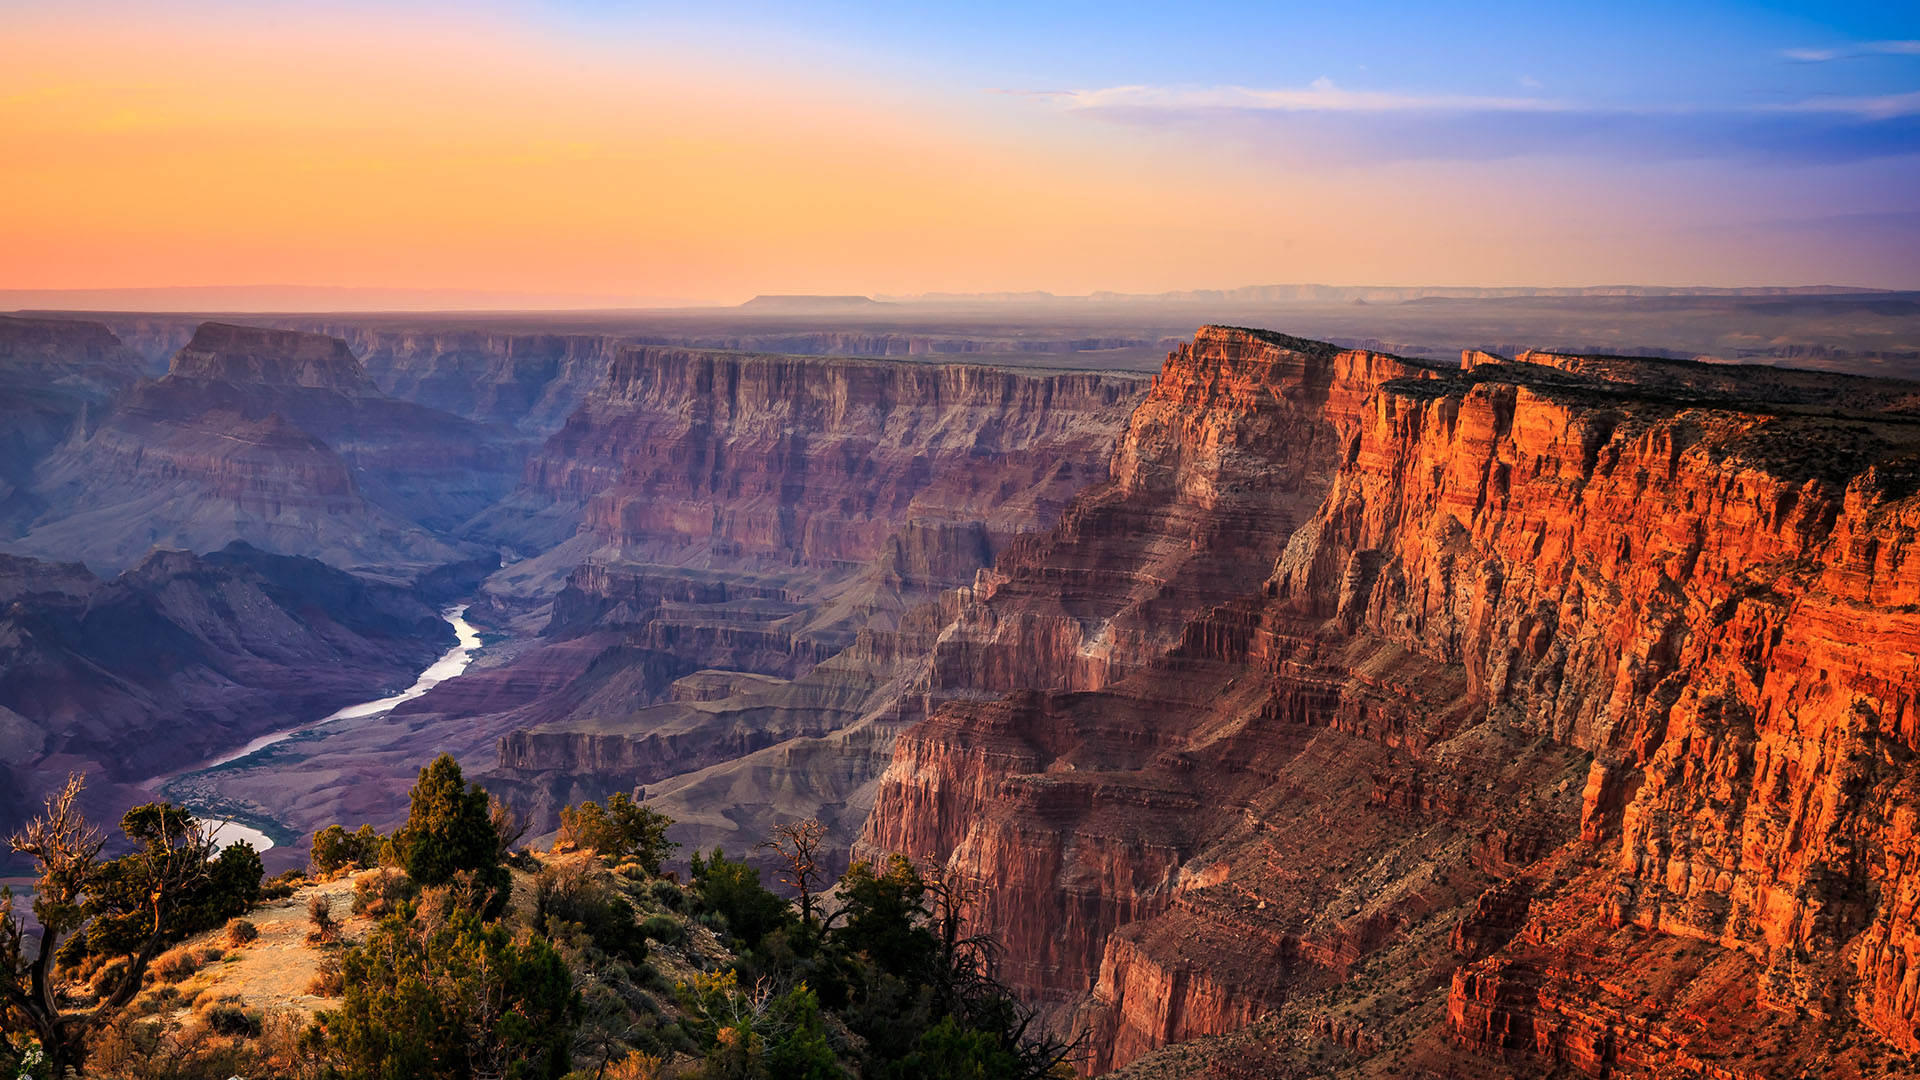  Grand Canyon - SmarterTravel.com